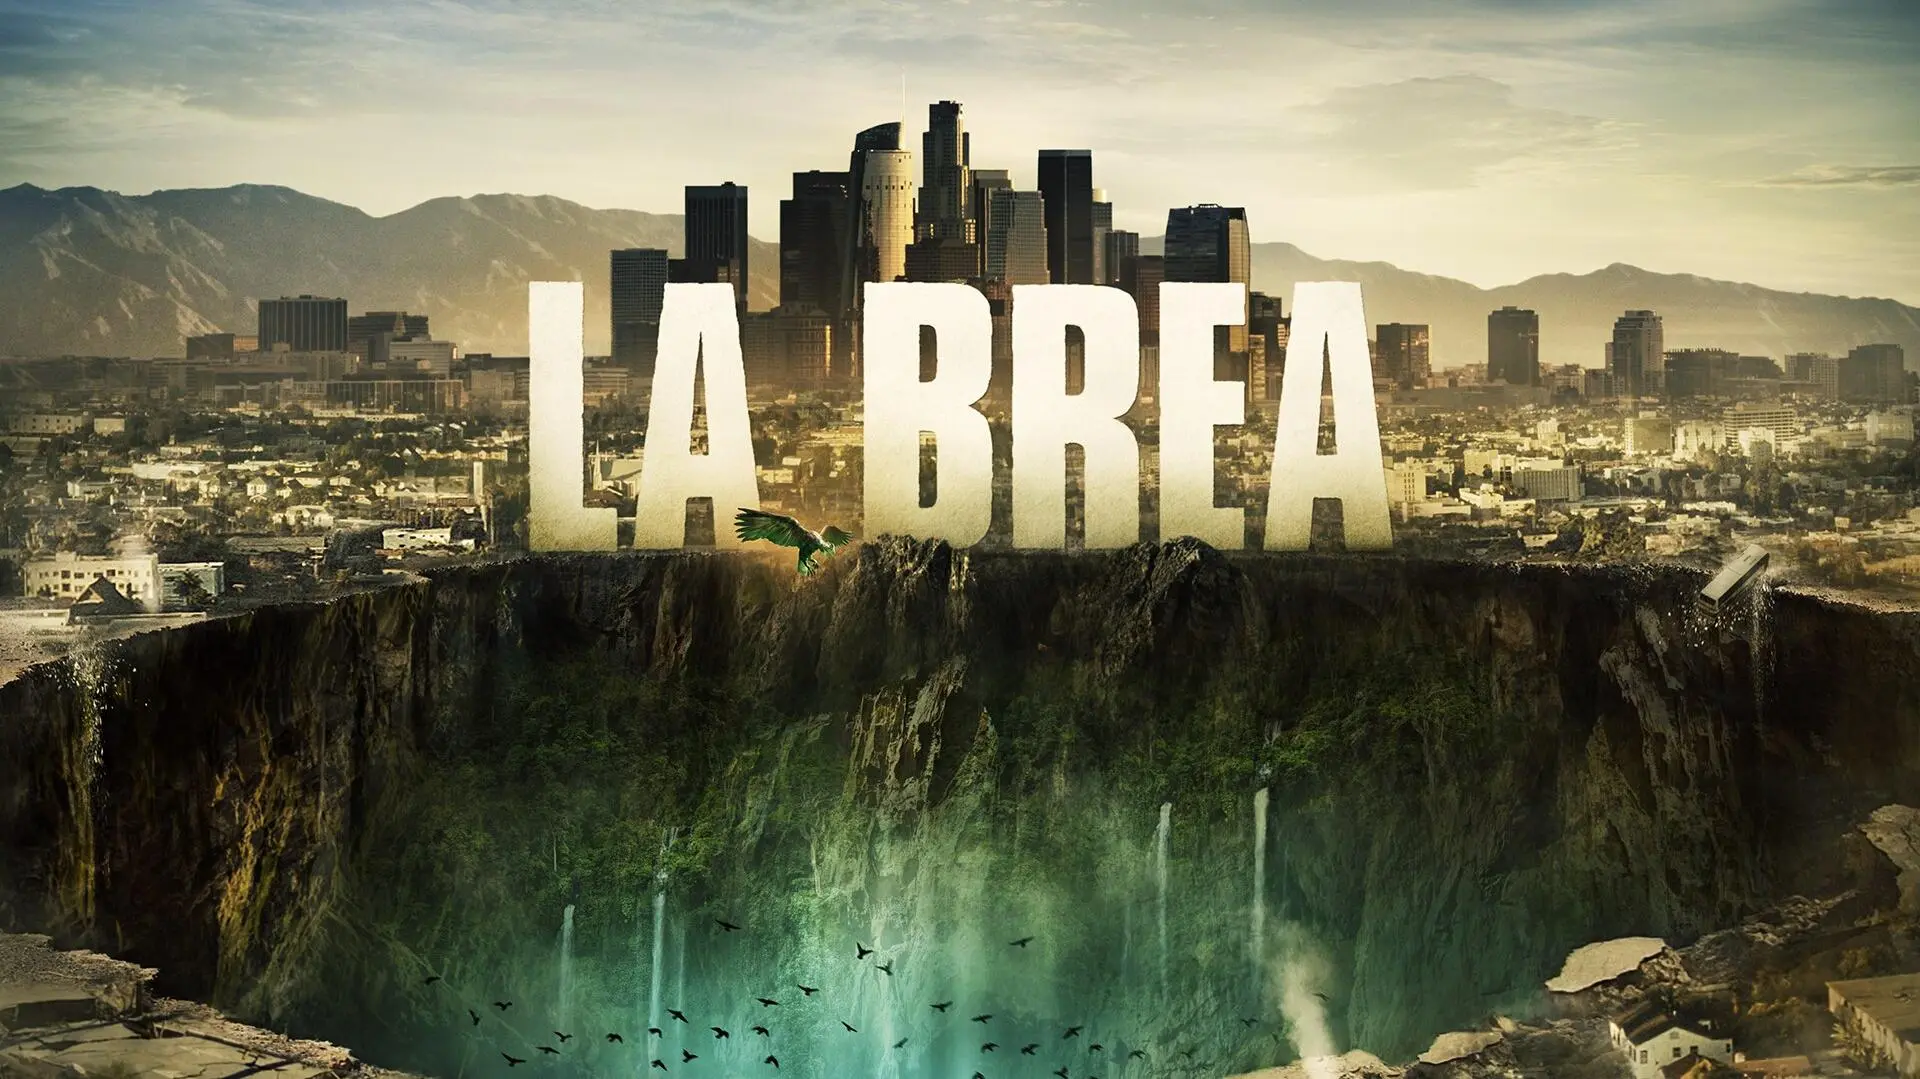 La Brea: A Terra Perdida_peliplat